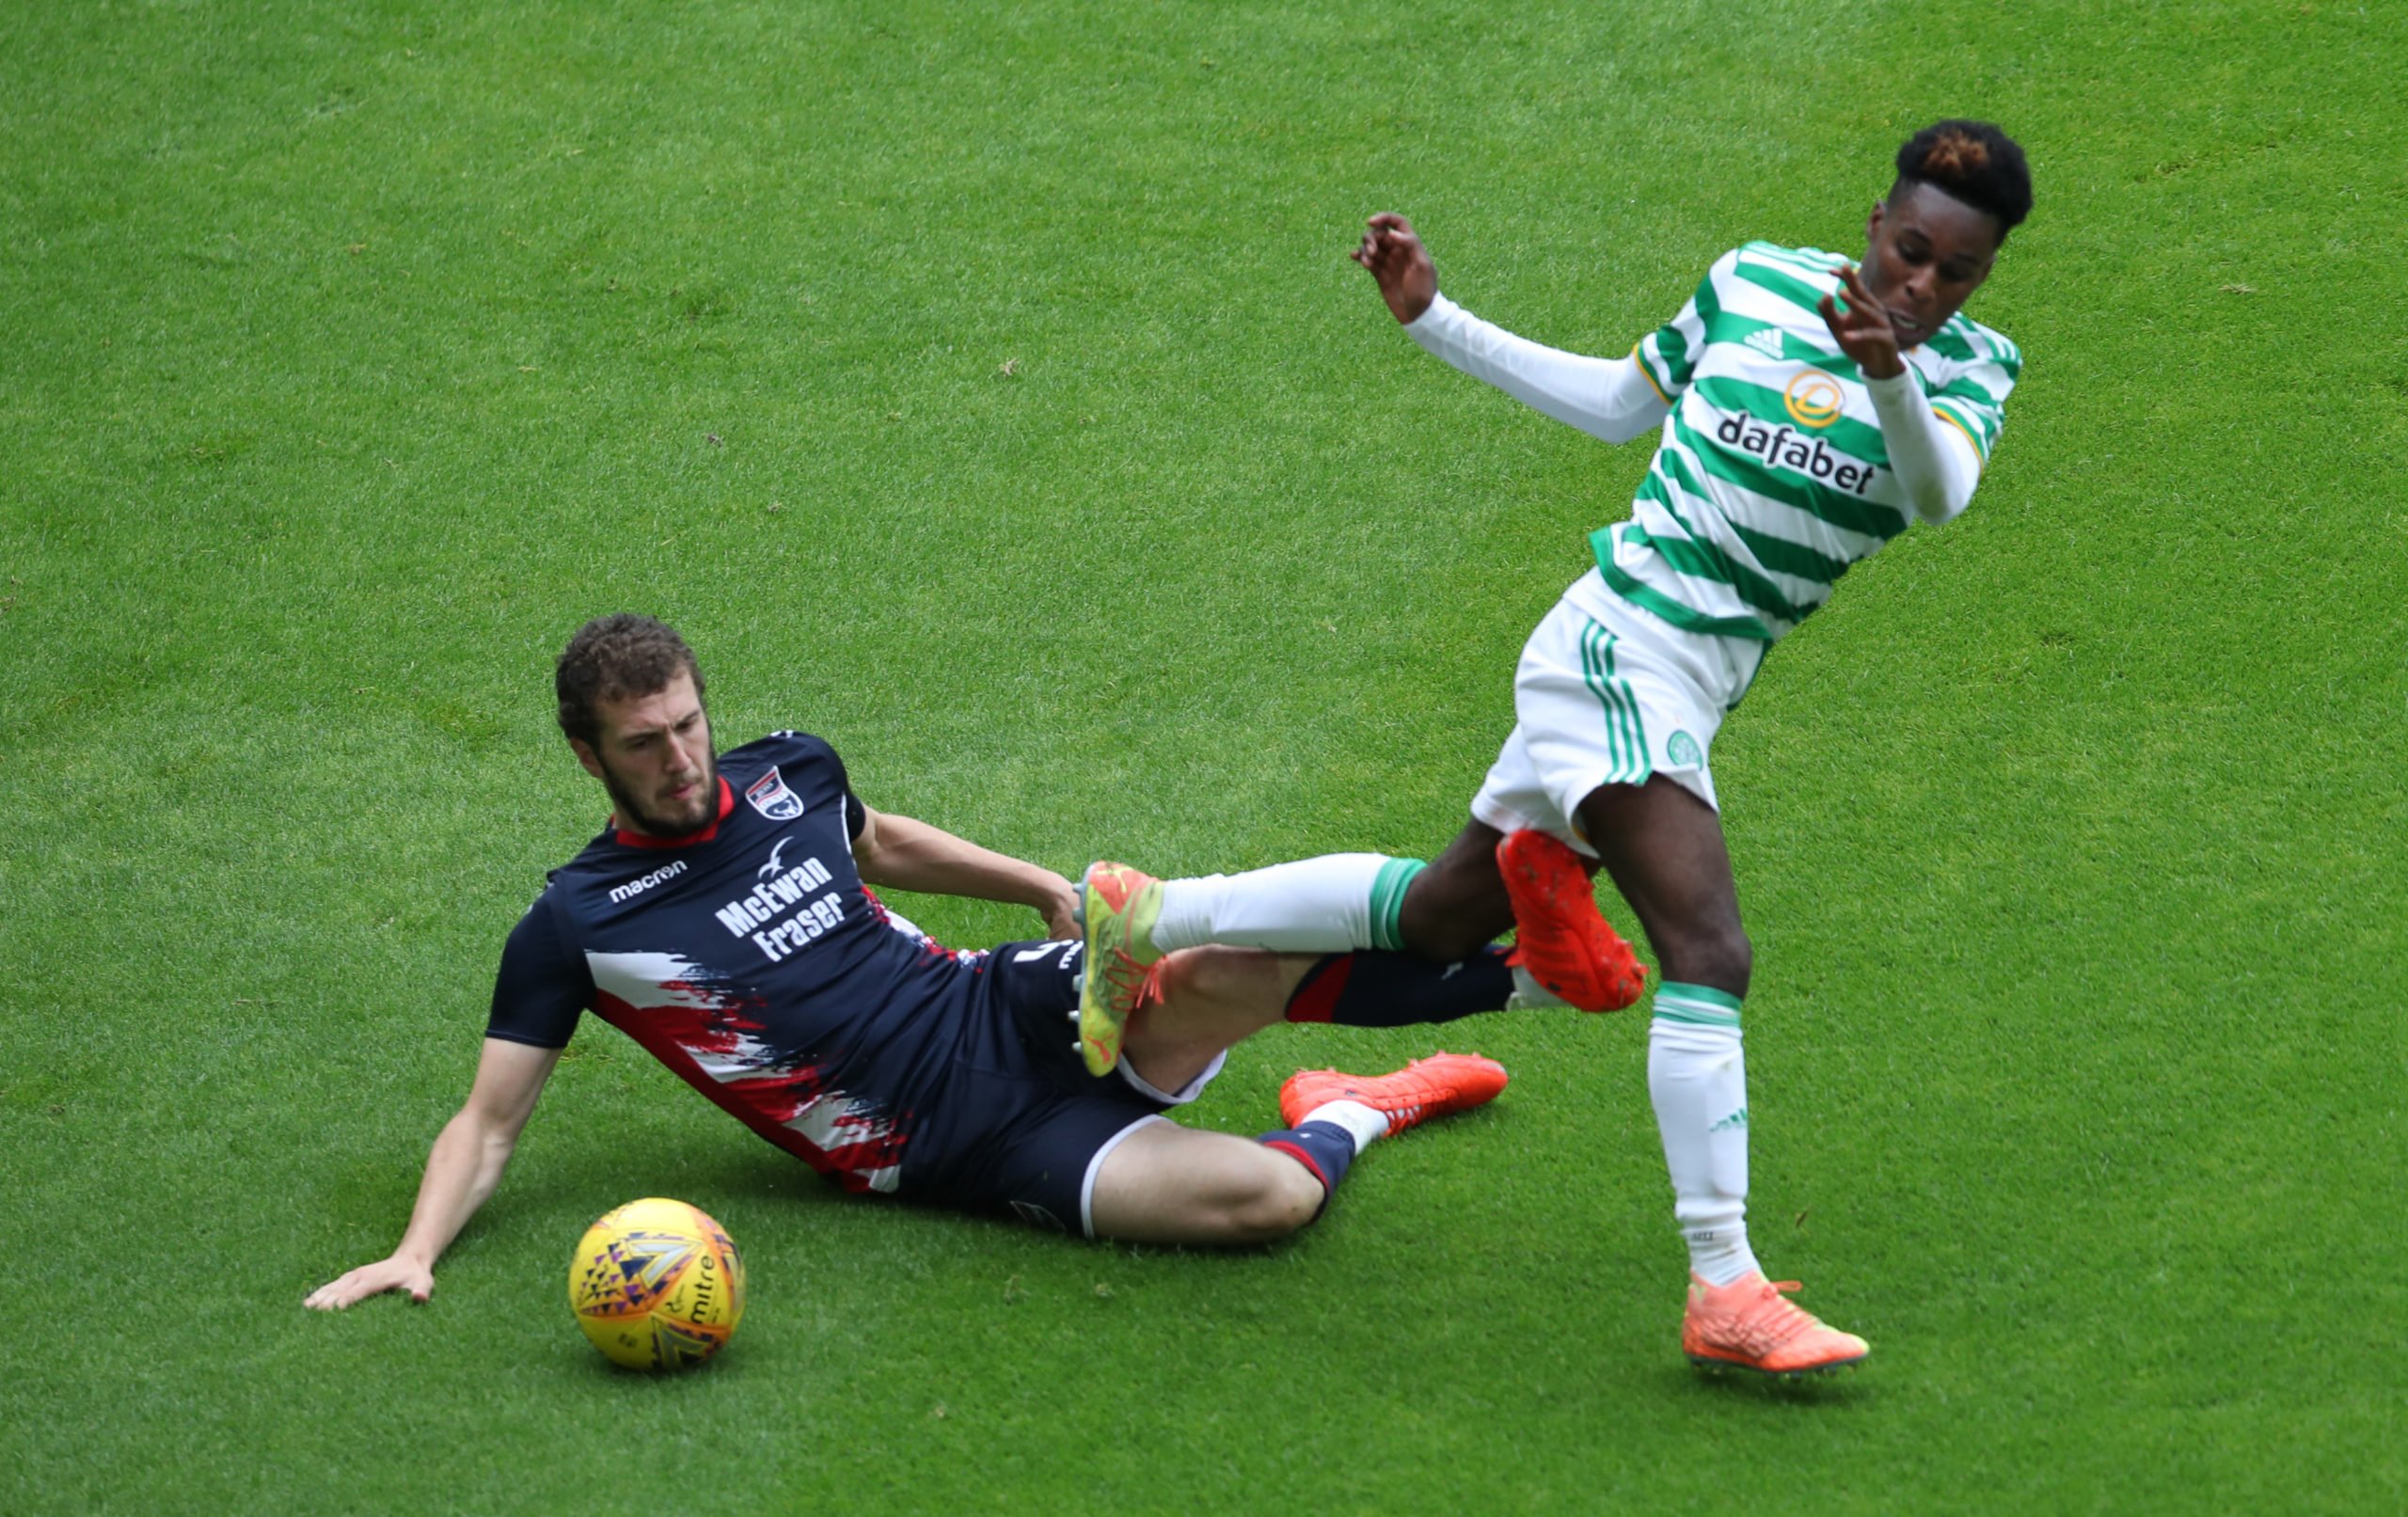 Celtic star Jeremie Frimpong is tackled